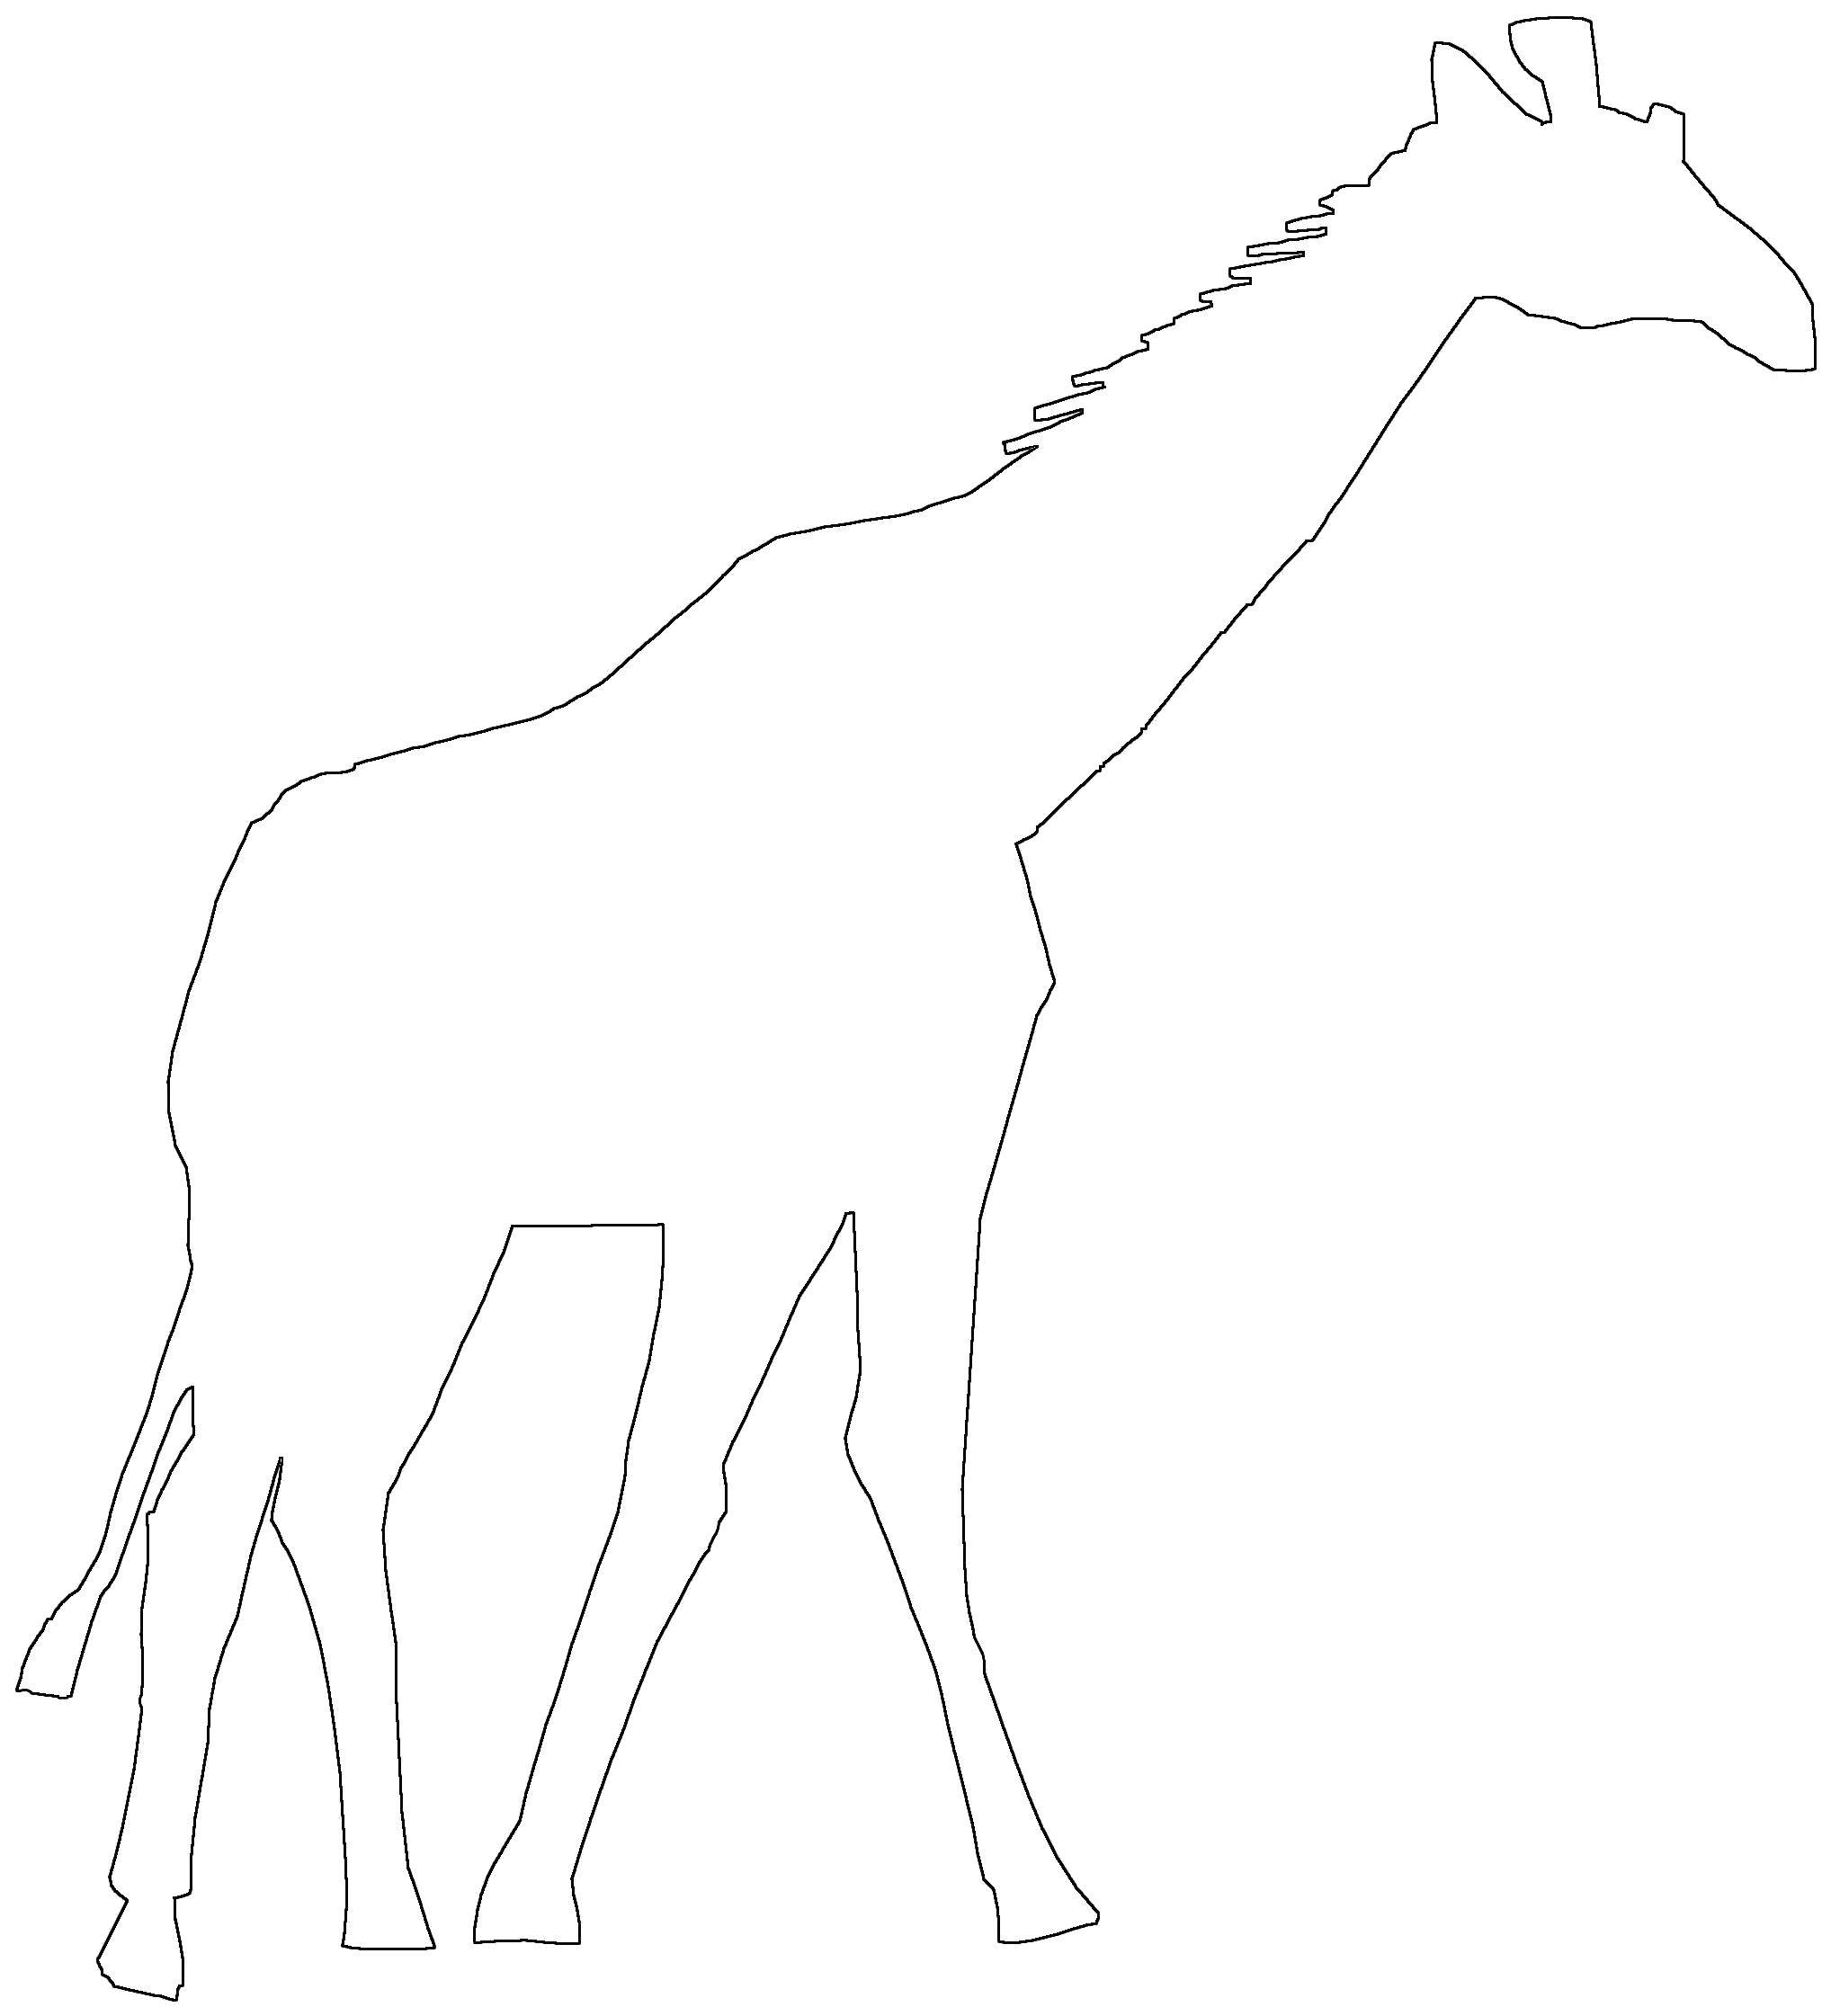 Опис: розмальовки  Жирафик. Категорія: Контур жирафа для вирізання. Теги:  Тварини, жираф.